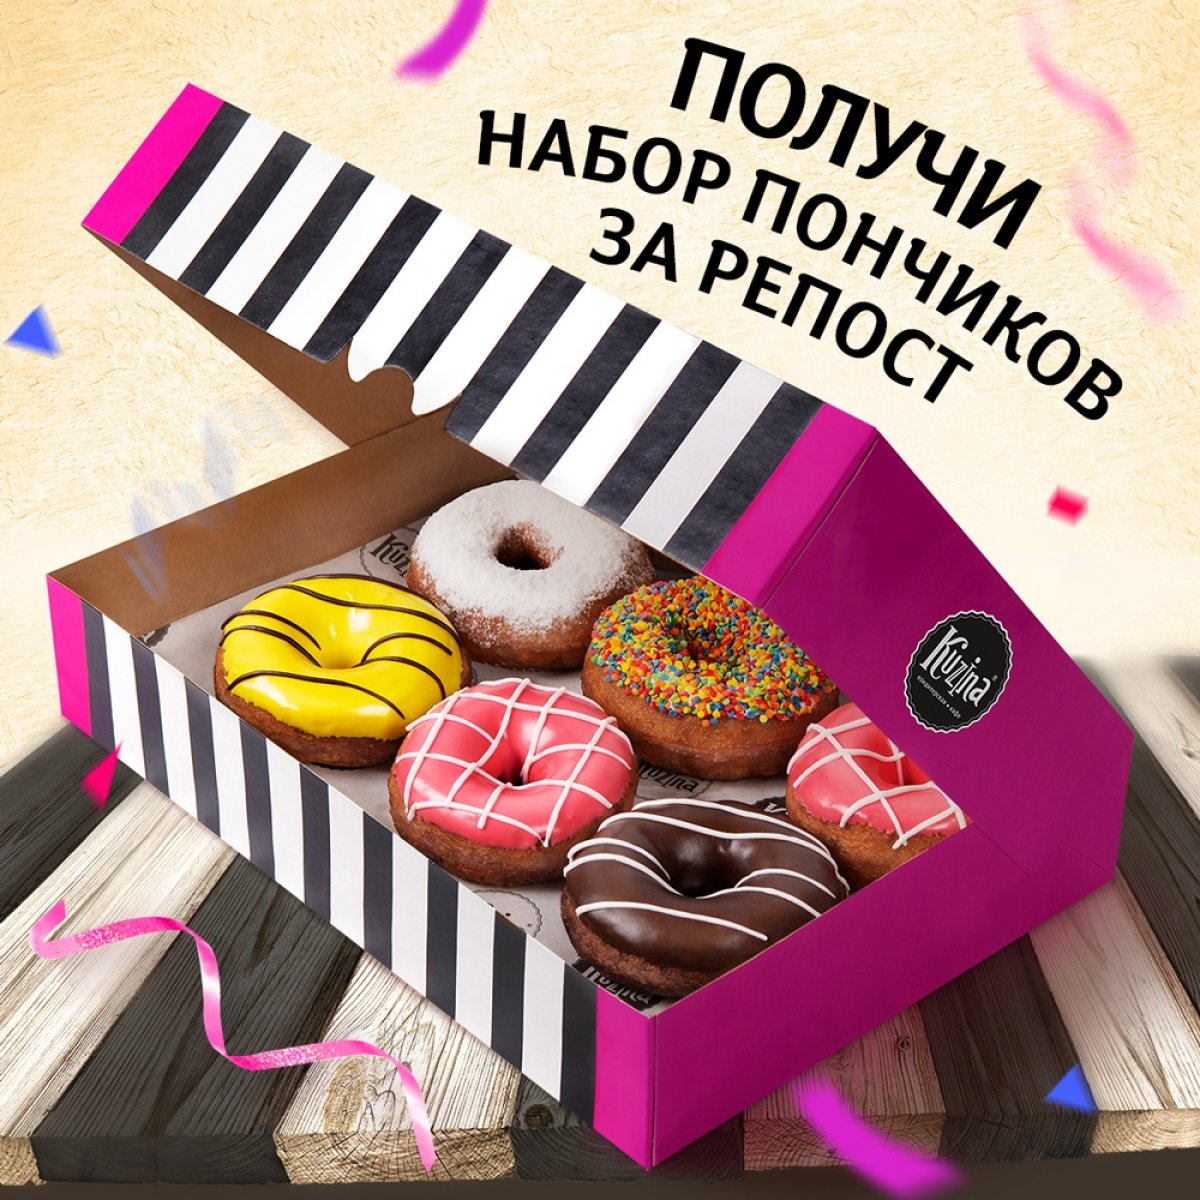 Совместно с нашими друзьями, сетью кондитерских Kuzina, разыгрываем набор пончиков! 🍩✨